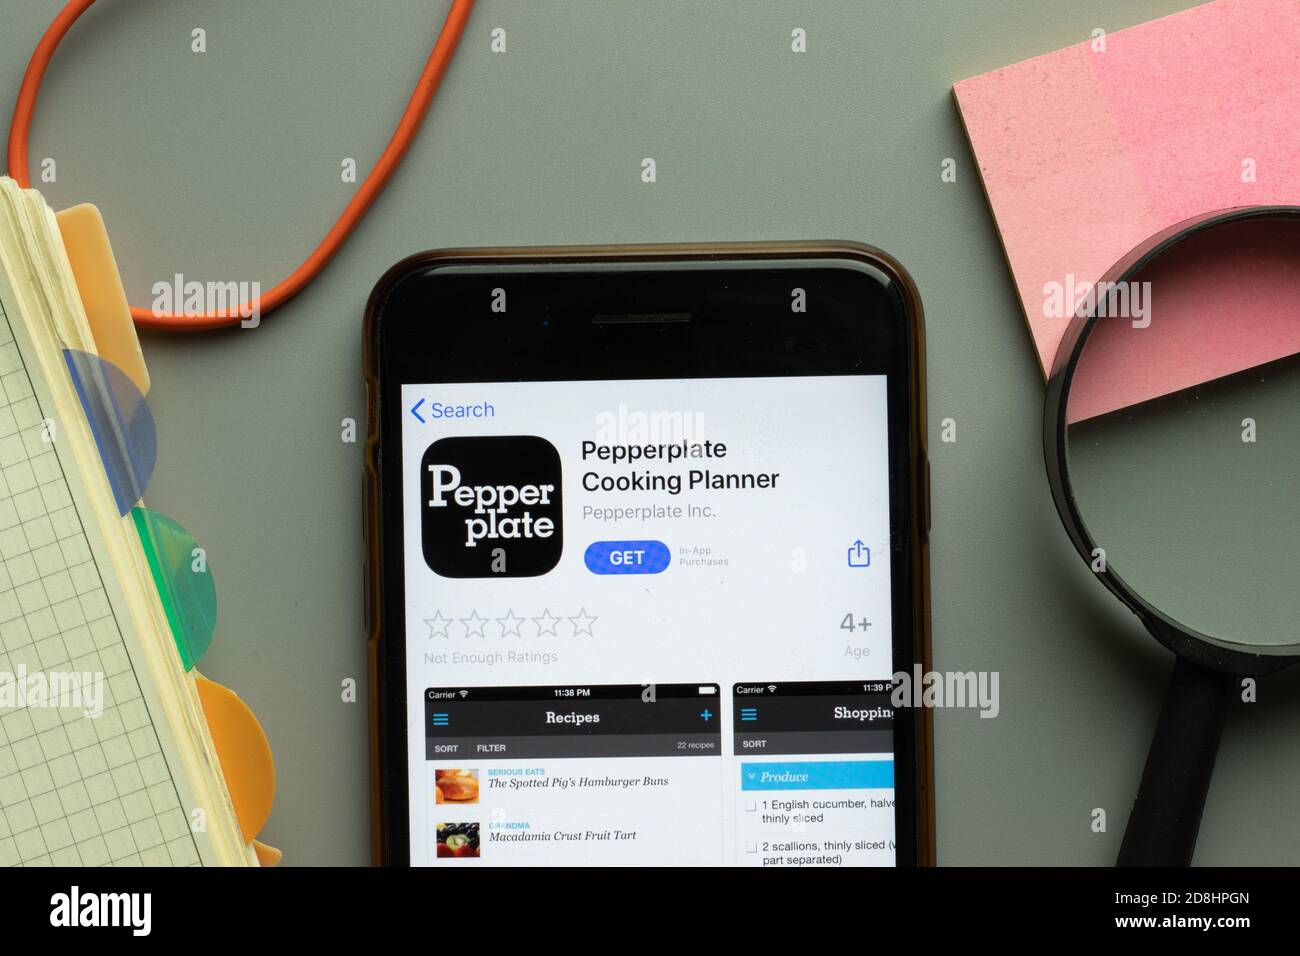 Nueva York, EE.UU. - 26 de octubre de 2020: Pepperplate Cooking Planner mobile app logo en pantalla teléfono de cerca, editorial ilustrativa Foto de stock